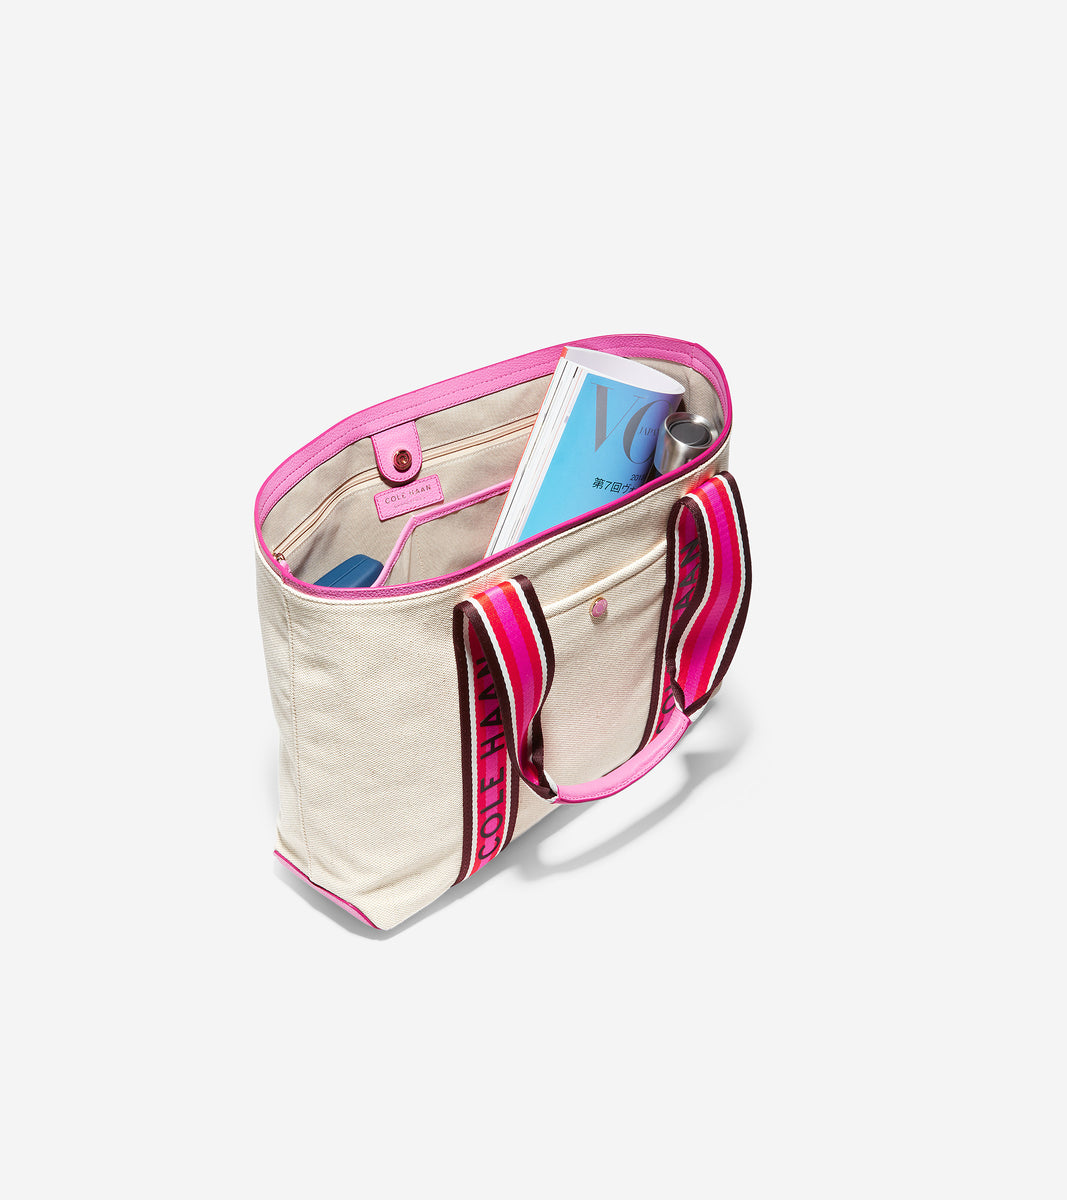 ColeHaan-Summer Canvas Tote Bag-u04368-Natural Canvas-Super Pink